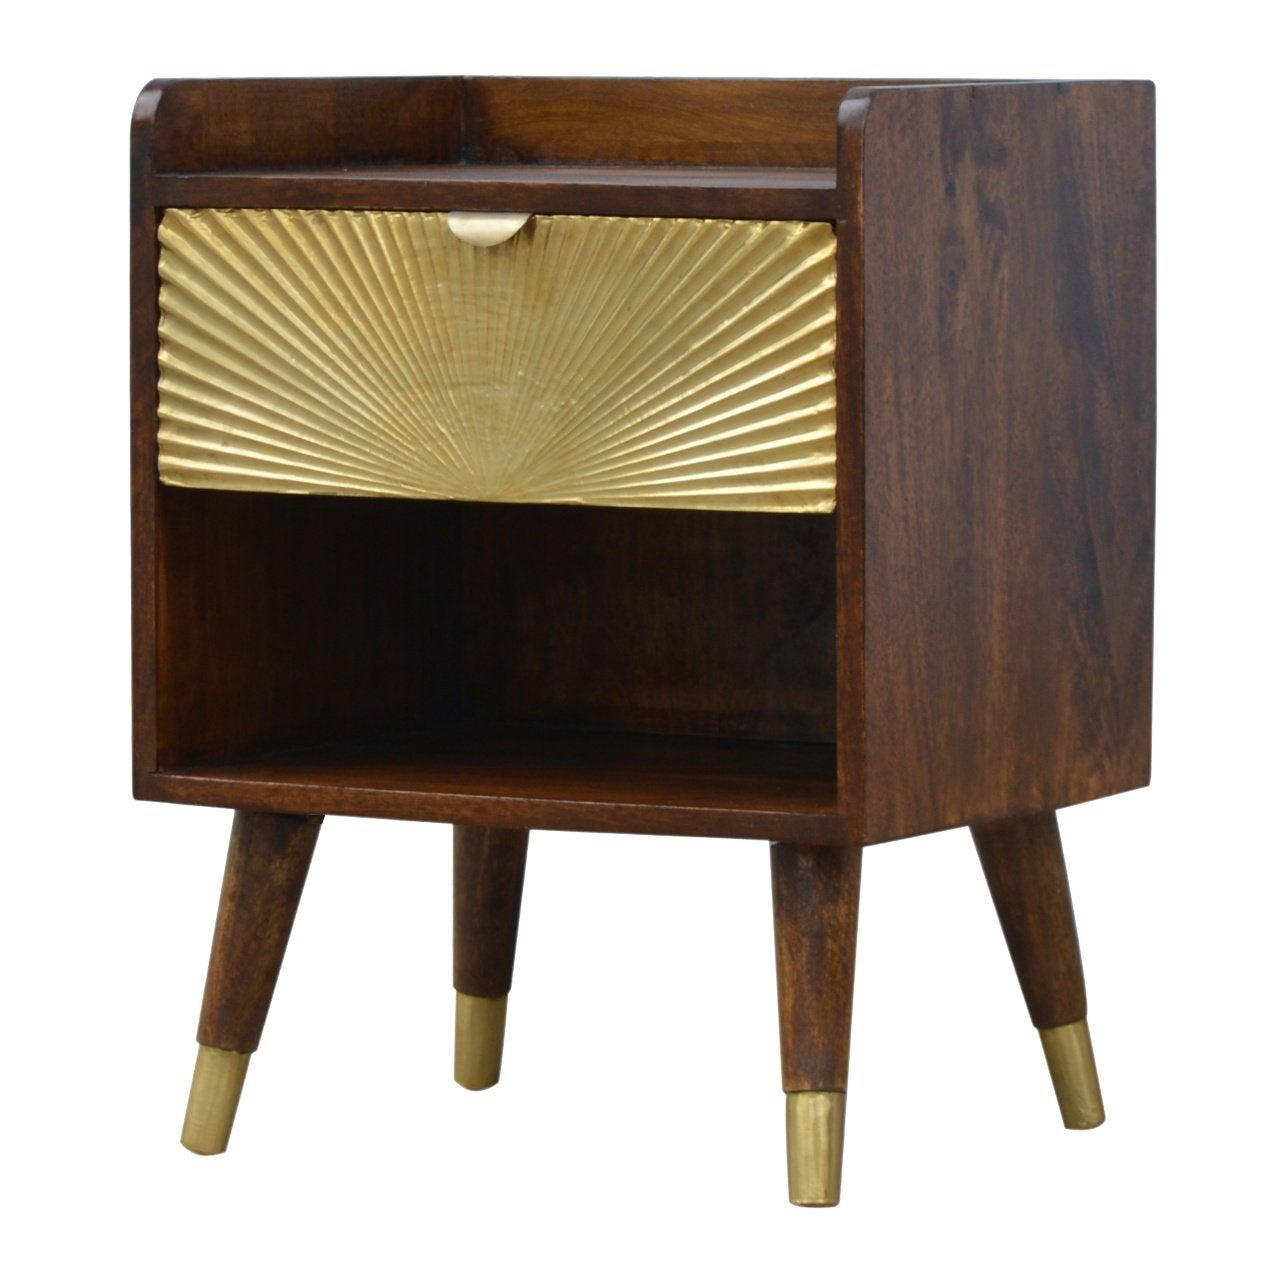 Manila gold 1 drawer bedside table - crimblefest furniture - image 2